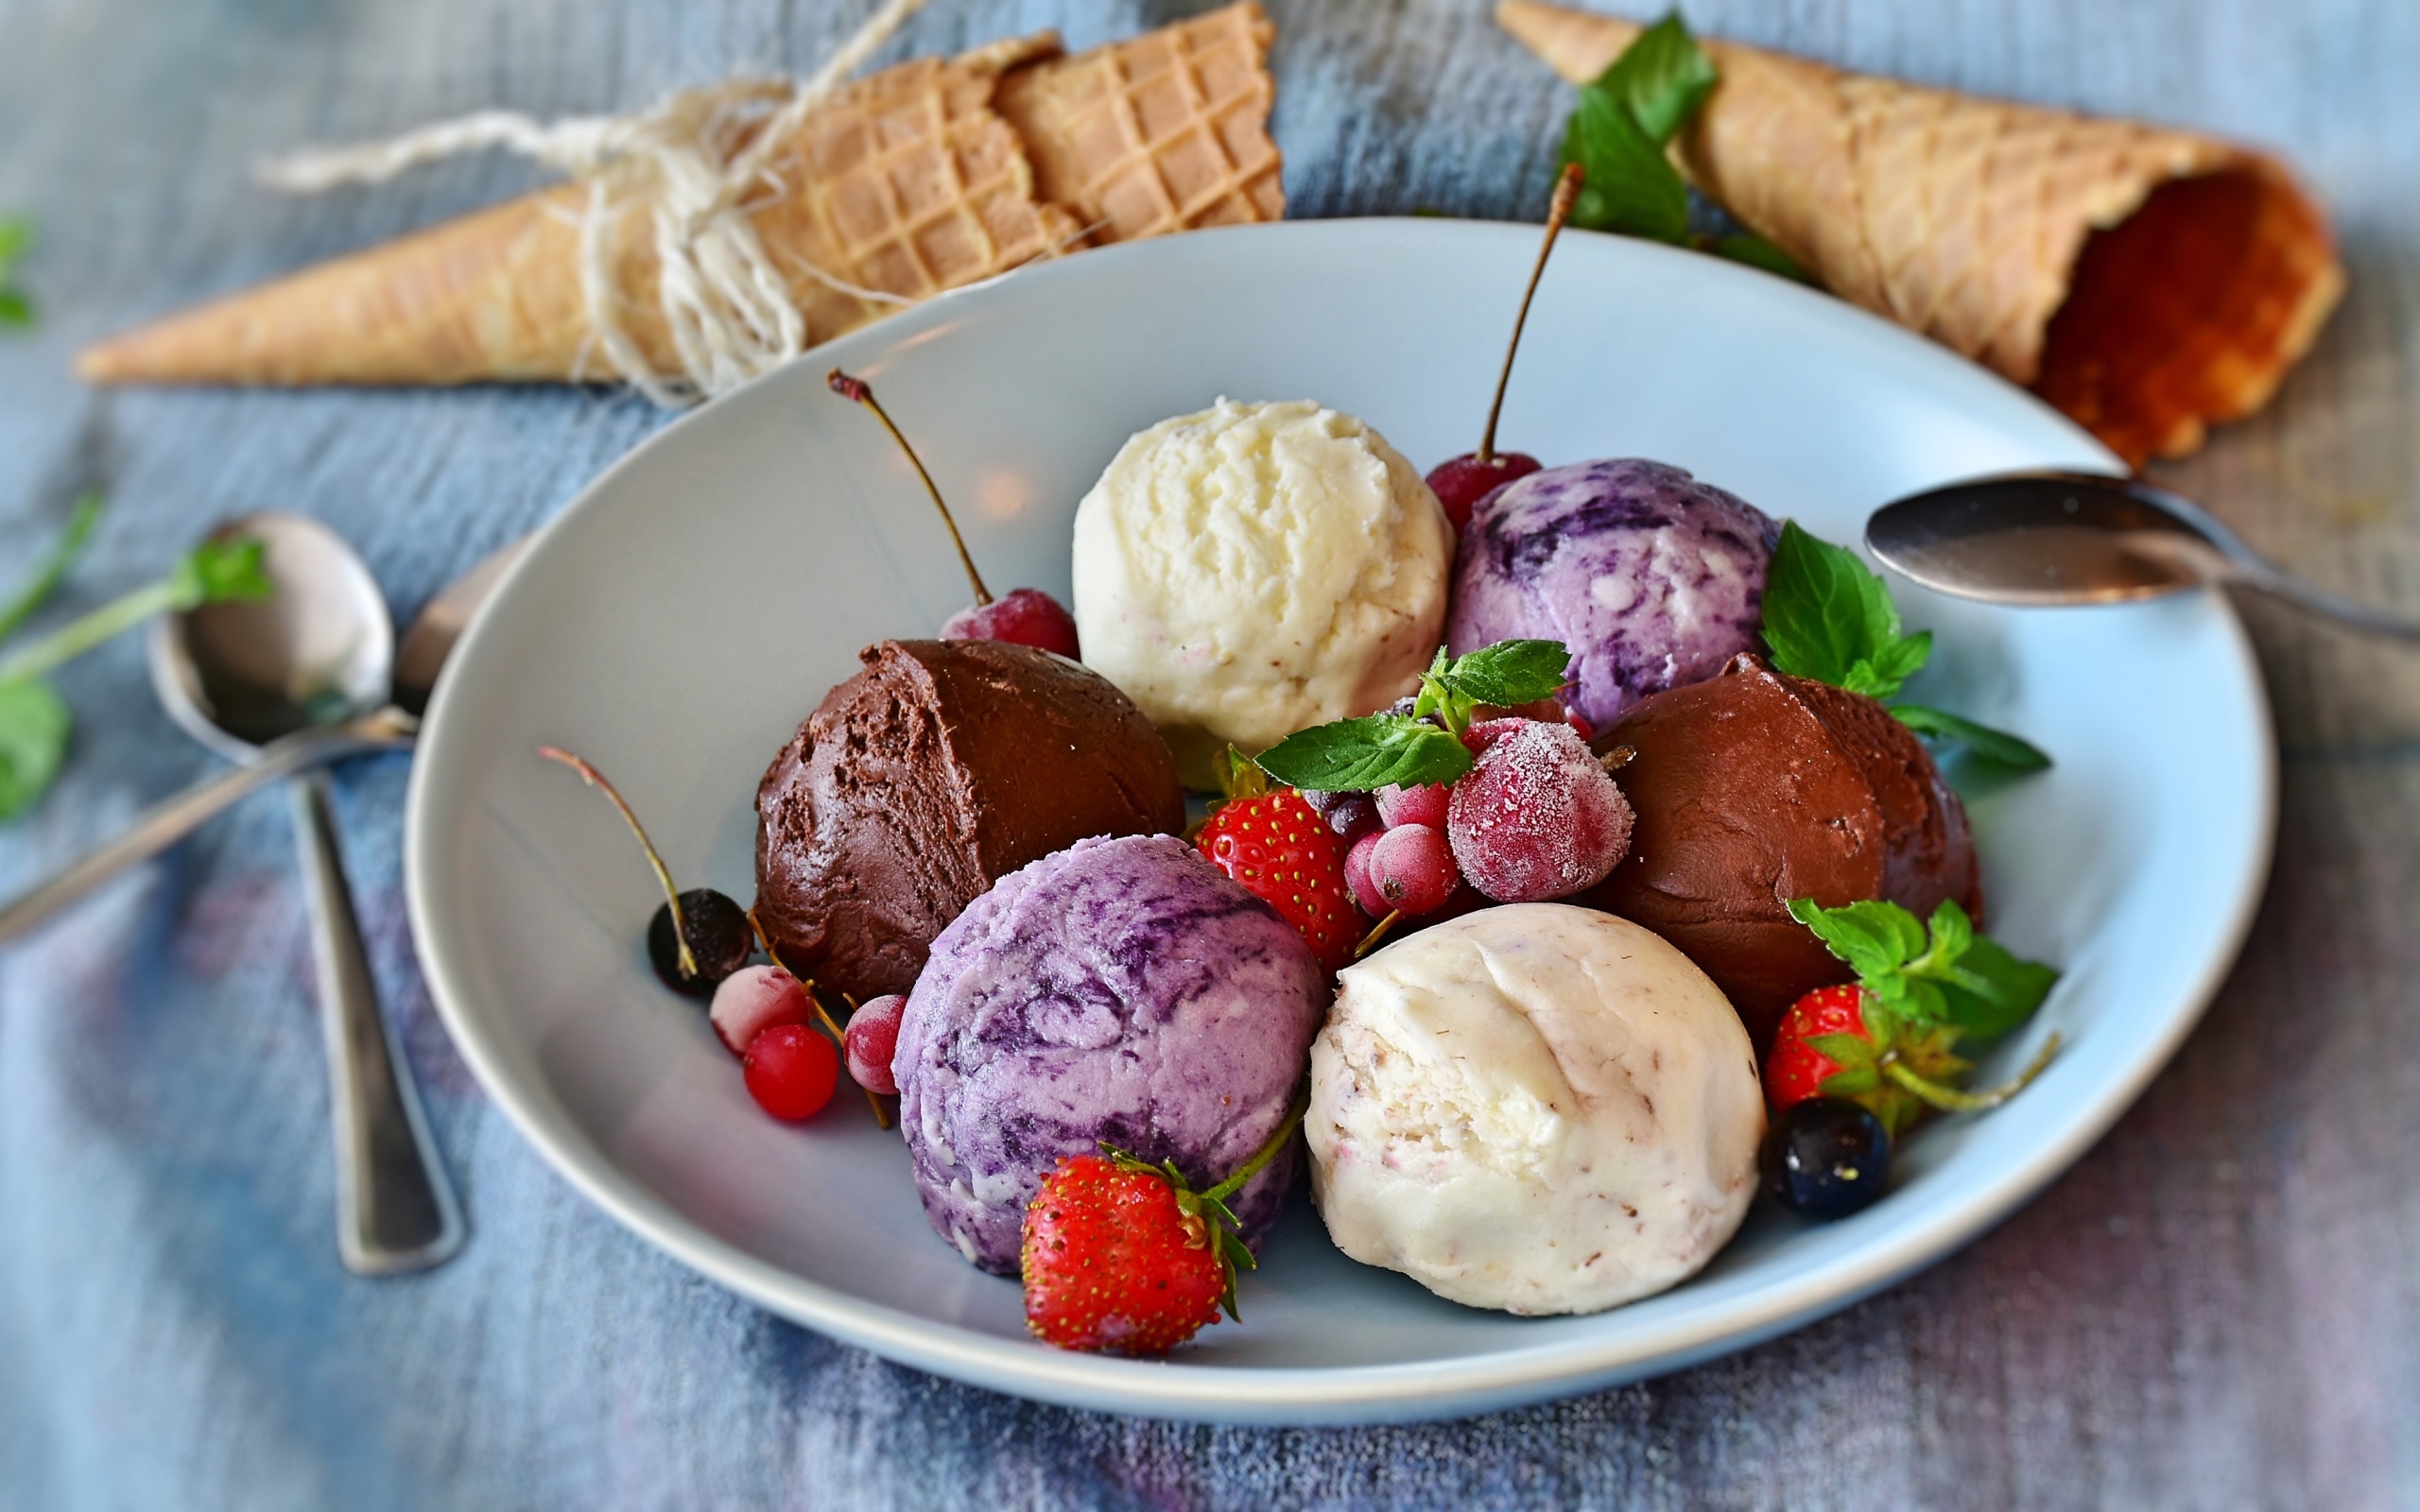 Шарики фруктового мороженого на тарелке со свежими ягодами